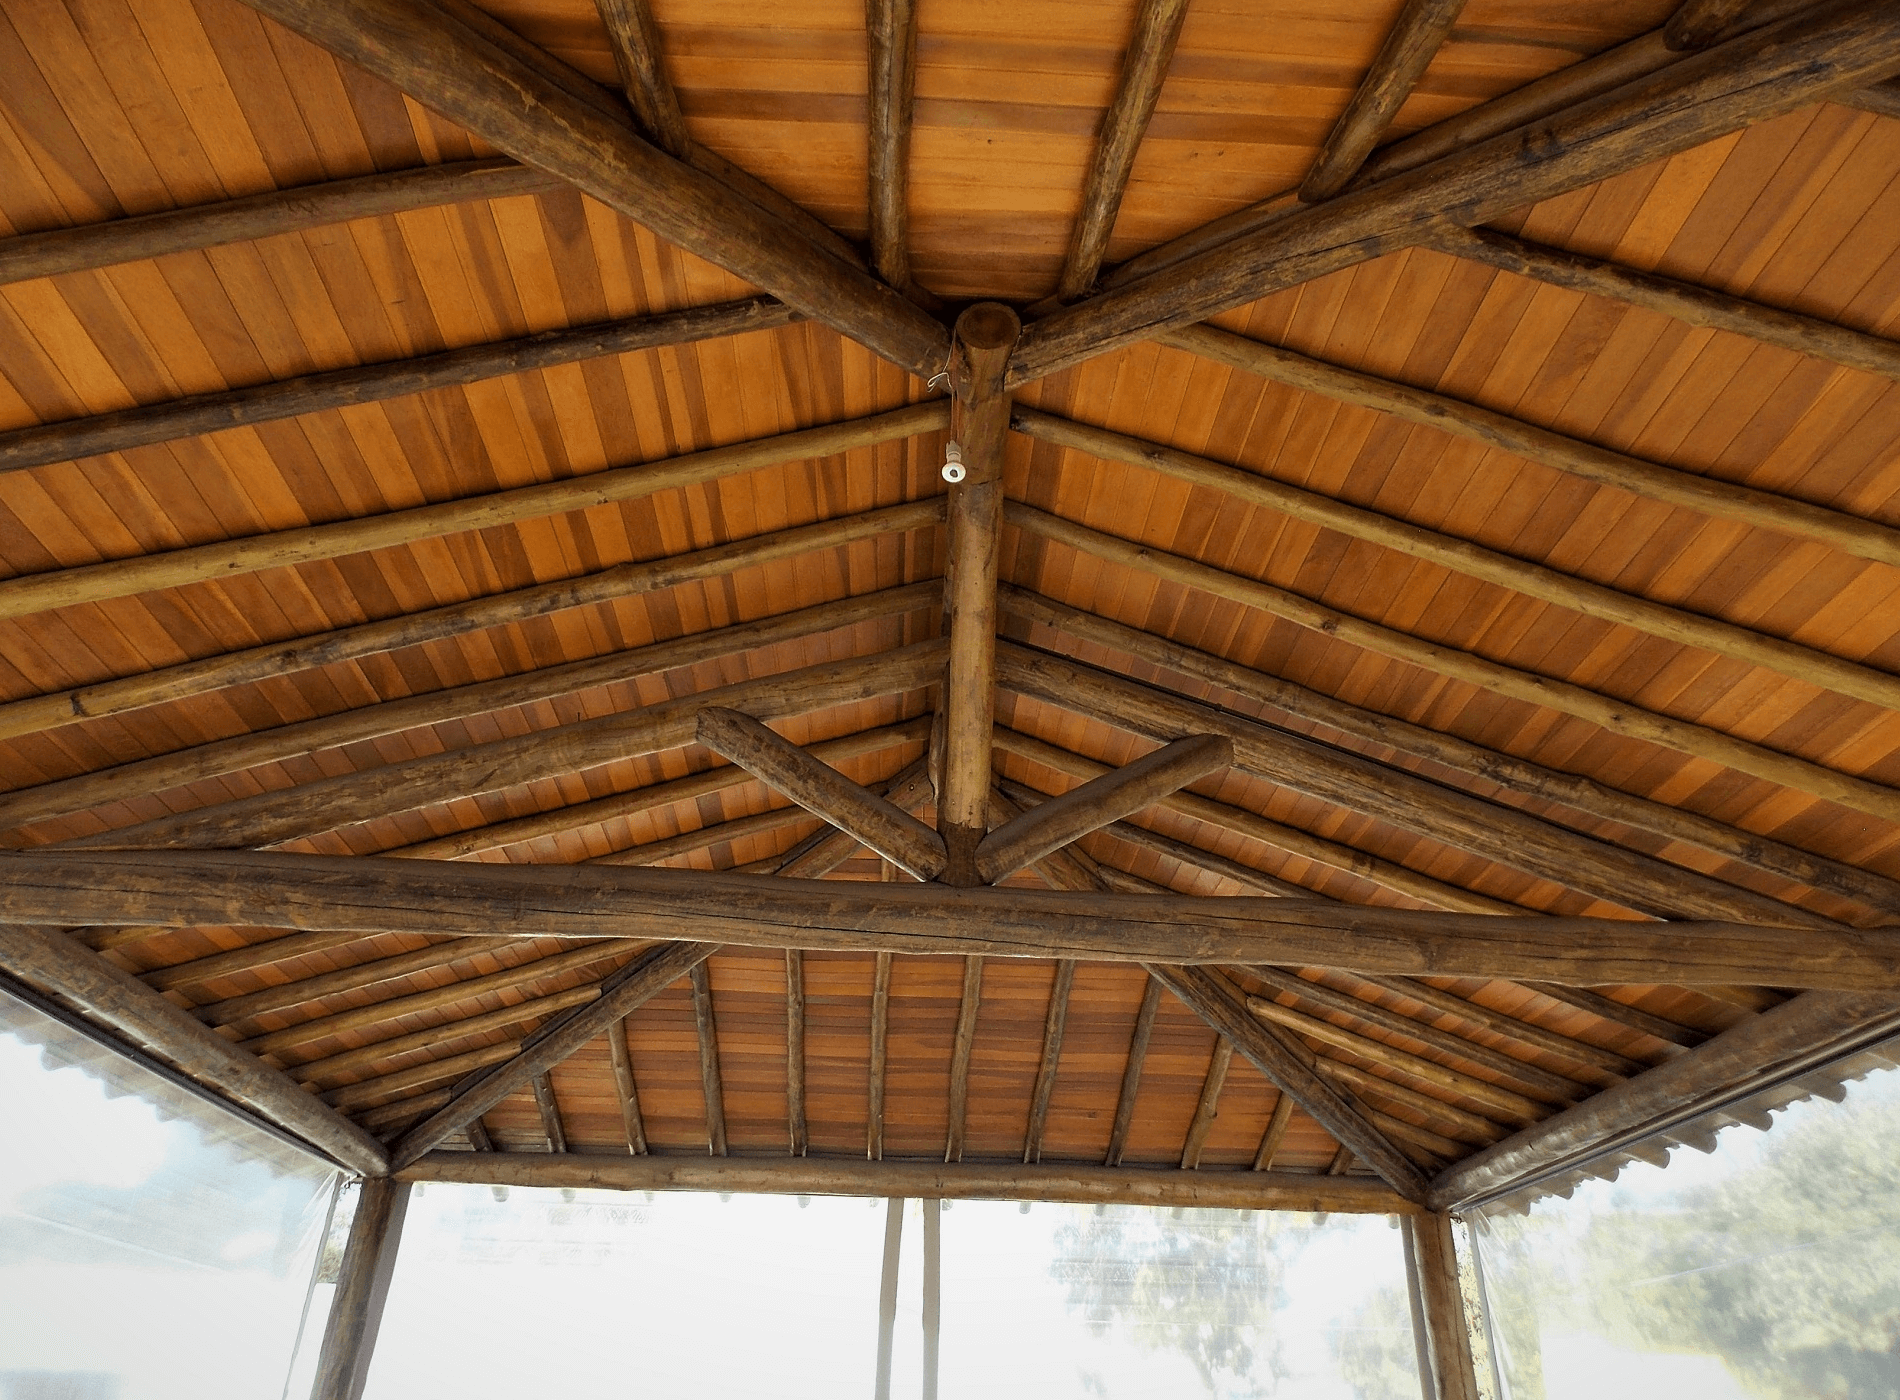 O Quiosque recebeu Telhado Rústico, modelo 4 águas. Na parte interna tesoura, confeccionada com madeira roliça, e forro de cedrinho. Itatiba – SP.